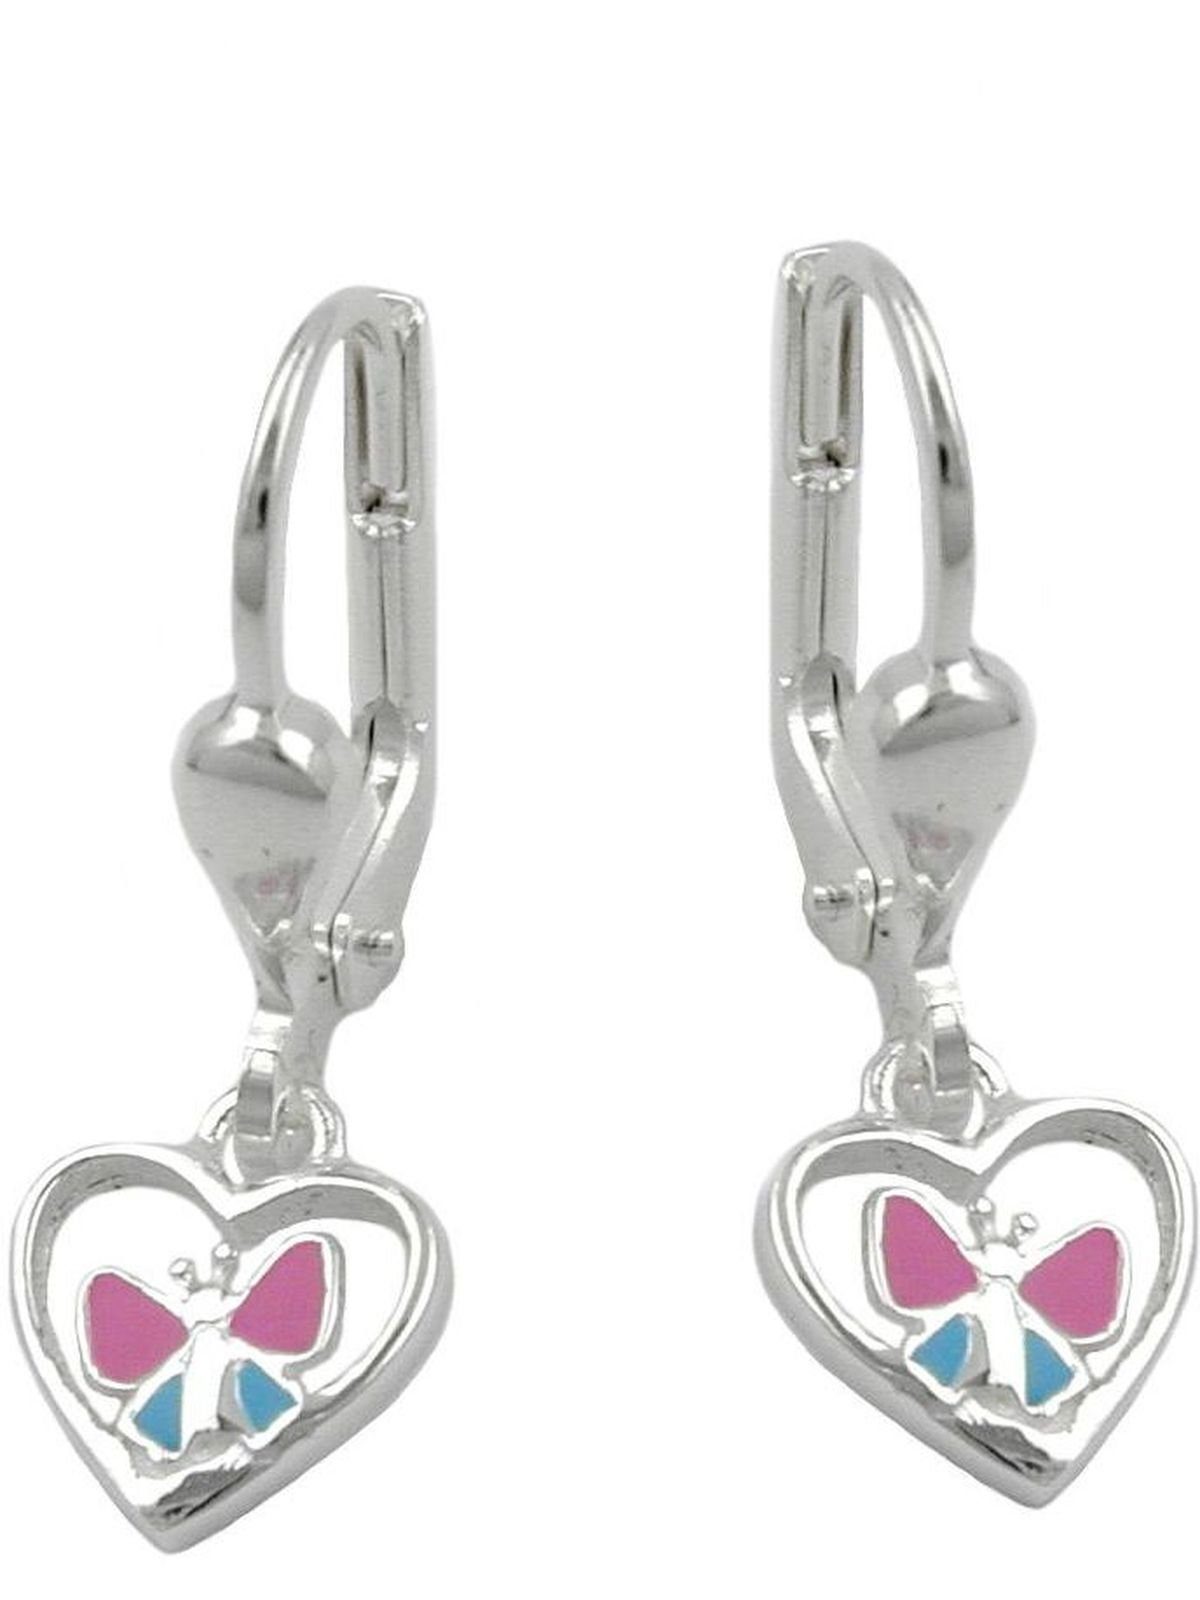 Gallay Paar Ohrhänger 23x7mm Ohrring Herz mit Schmetterling hellblau pink lackiert Silber 925